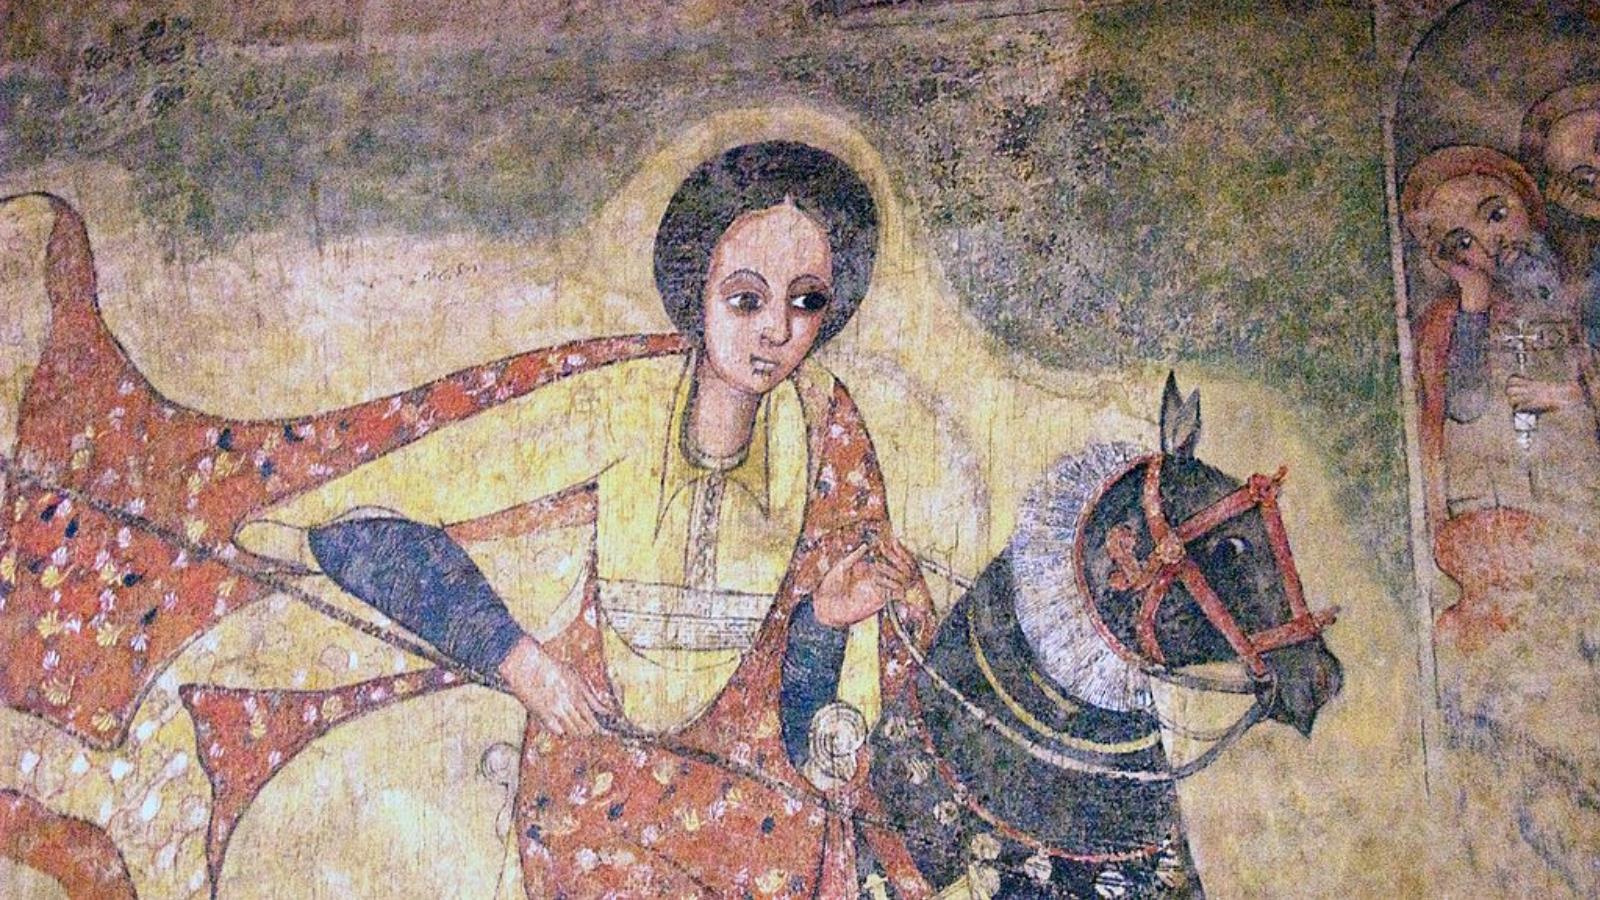 ‪لوحة لملكة سبأ من القرن 17 في كنيسة إثيوبية‬ (ويكي كومنز)